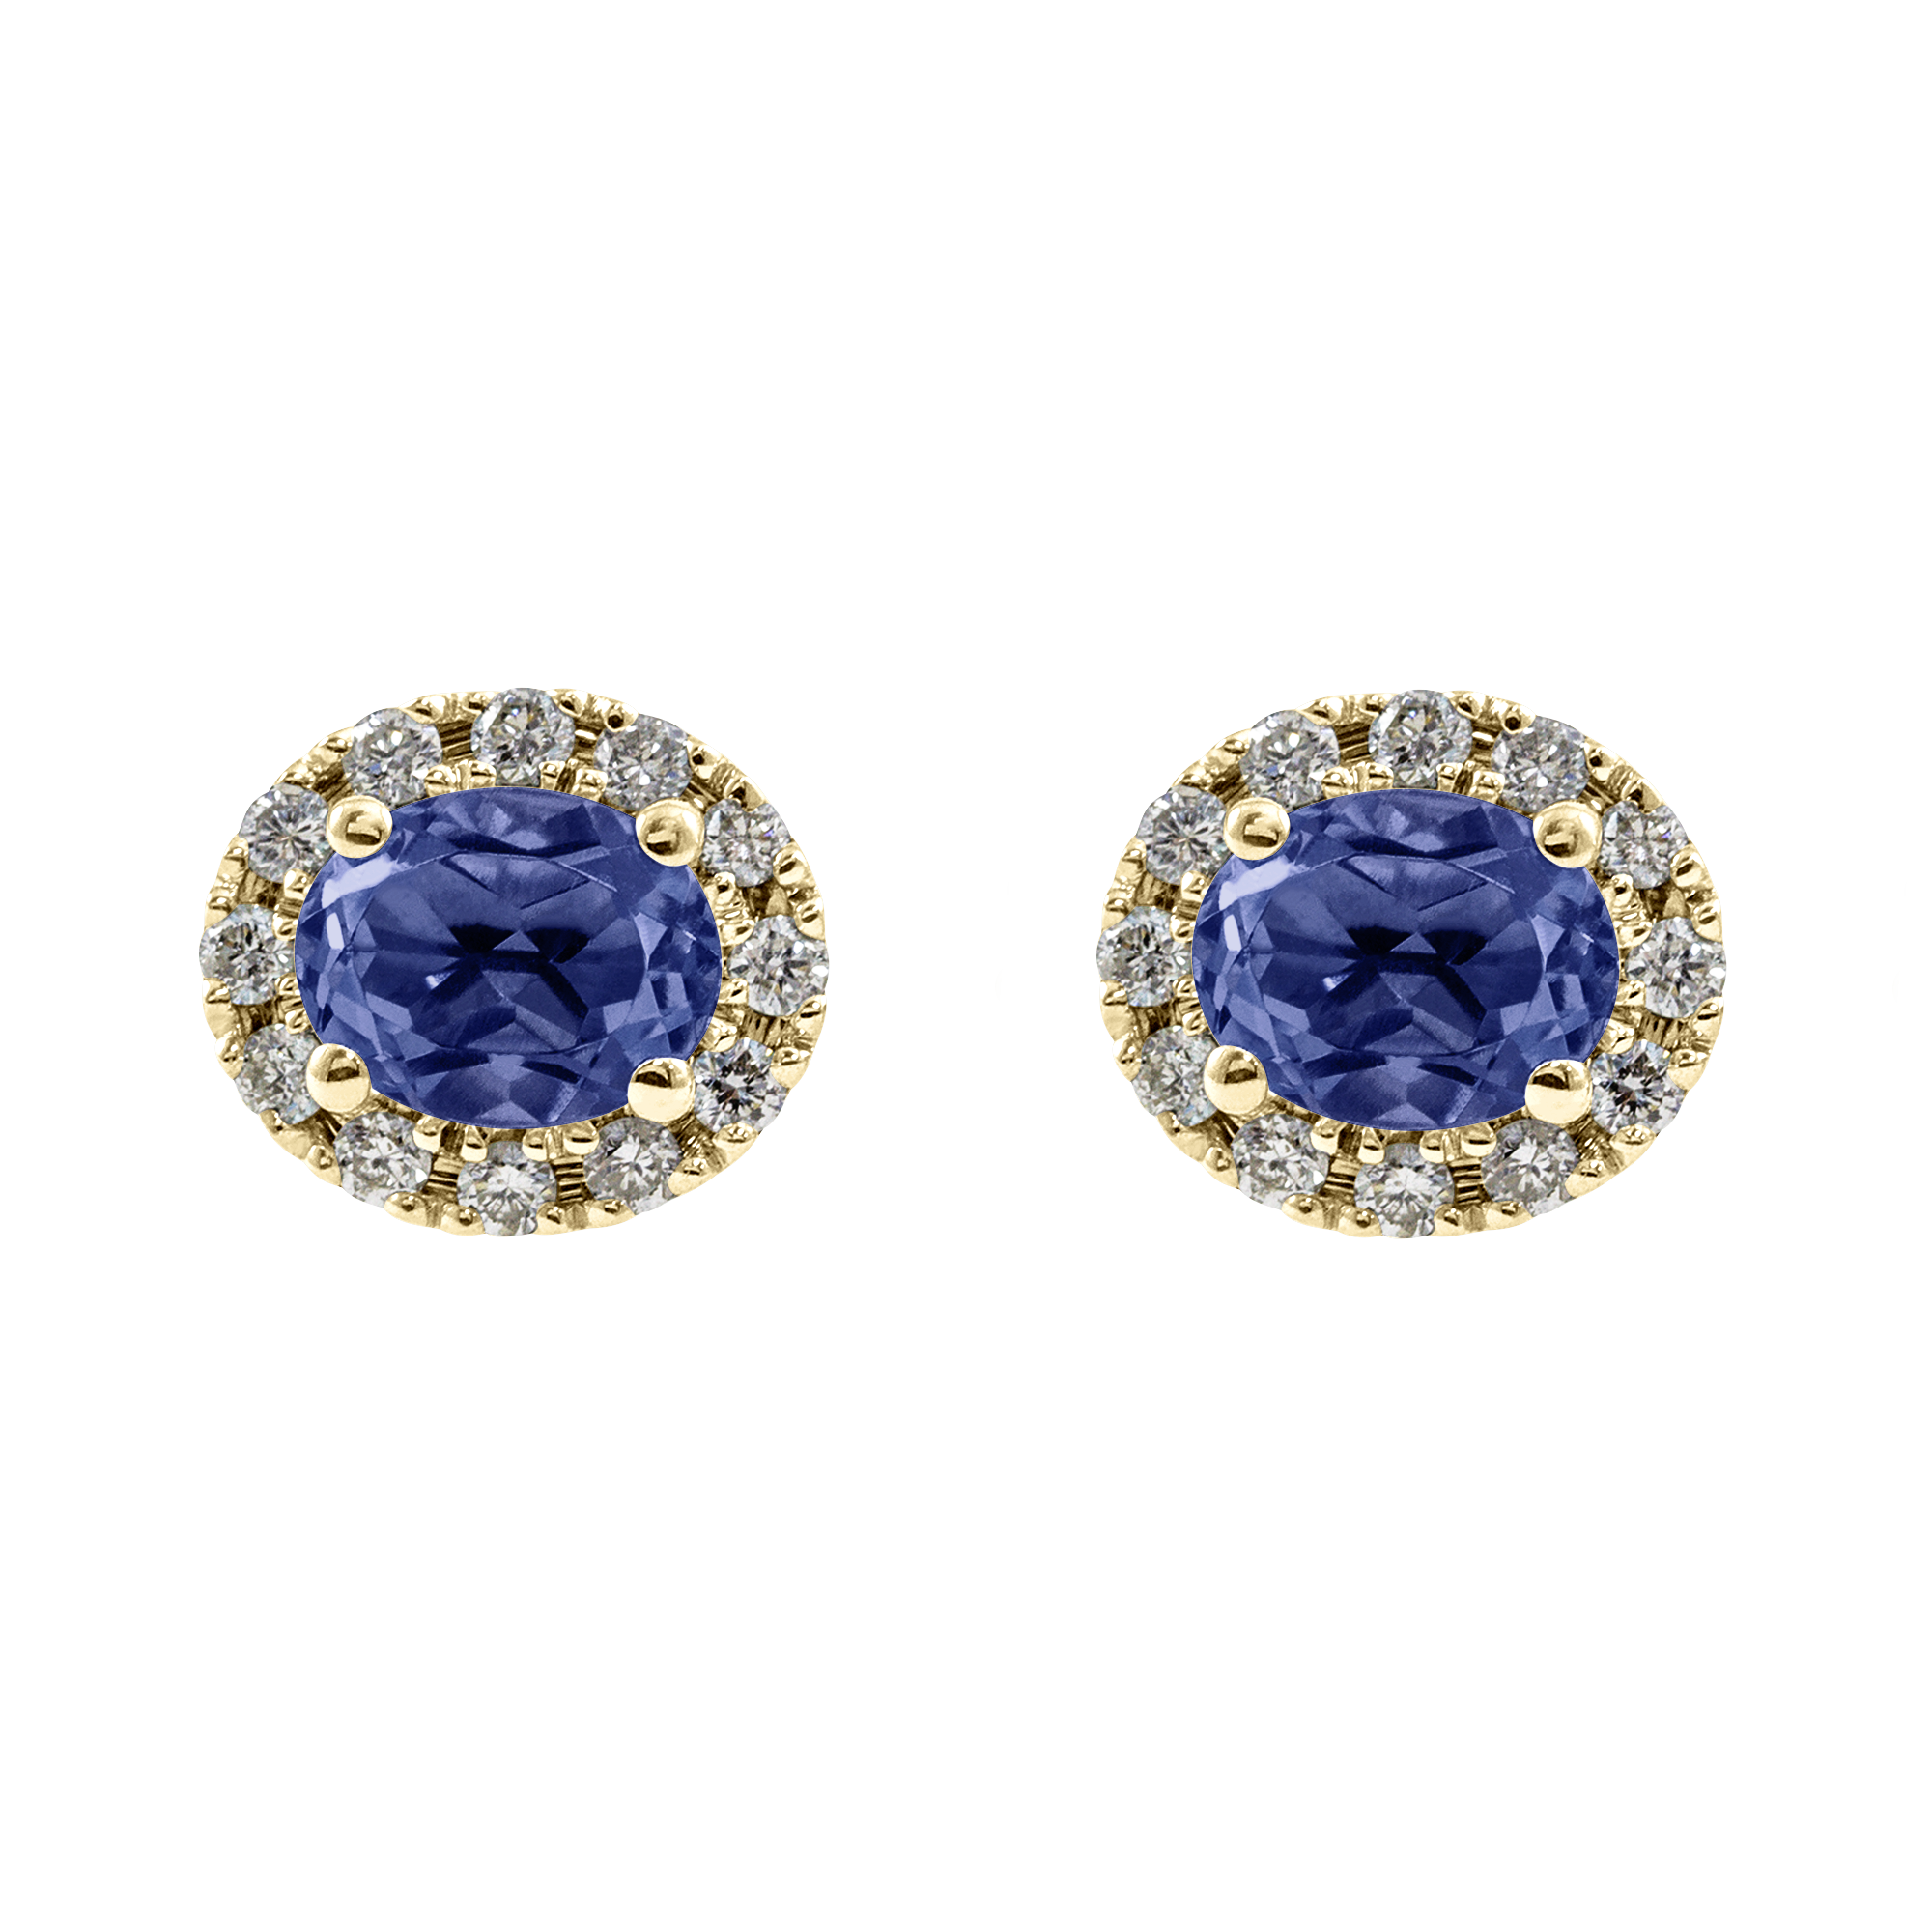 Pendiente rosetón oval Diamantes personalizado